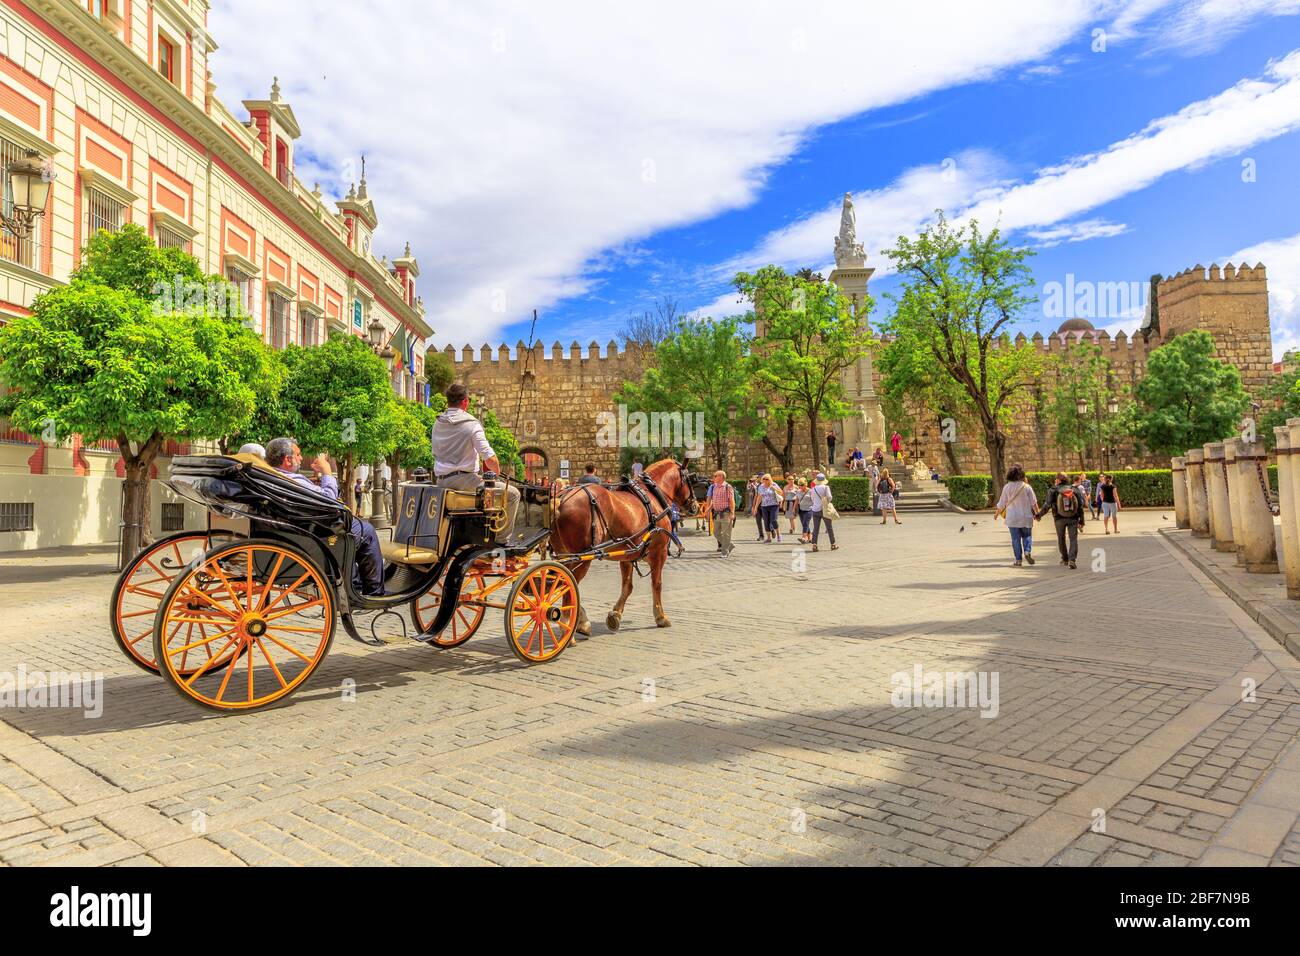 Siviglia, Andalusia, Spagna - 18 aprile 2016: Turisti che fanno un giro in carrozza a cavallo in Piazza Trionfo o Plaza del Triunfo accanto all'Archivio del Foto Stock